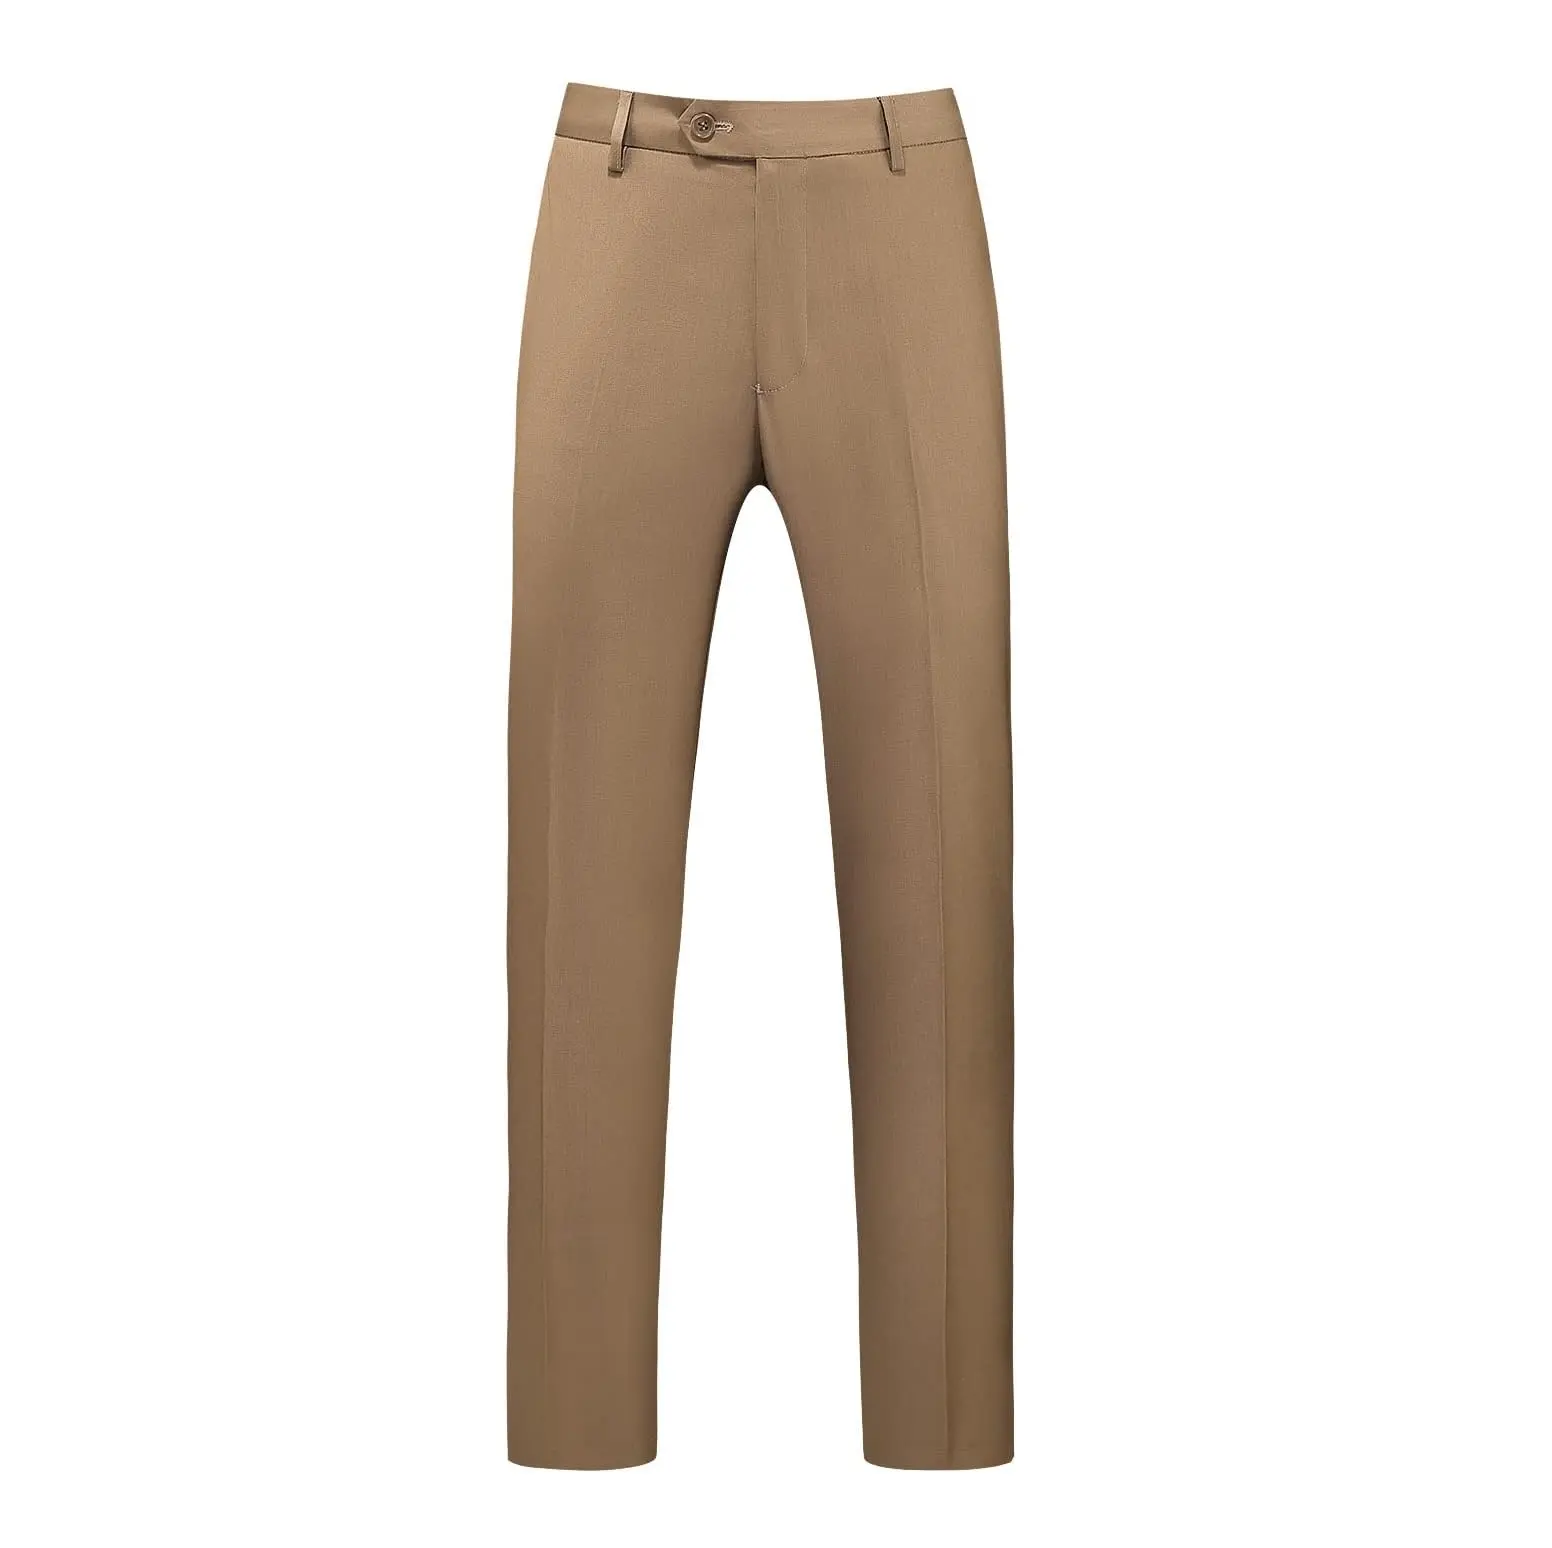 איכות מעולה צבע אופנתי צבע חאקי ביגוד תאגידי מכנסיים פורמליים לגברים זמינים במחירים הטובים ביותר